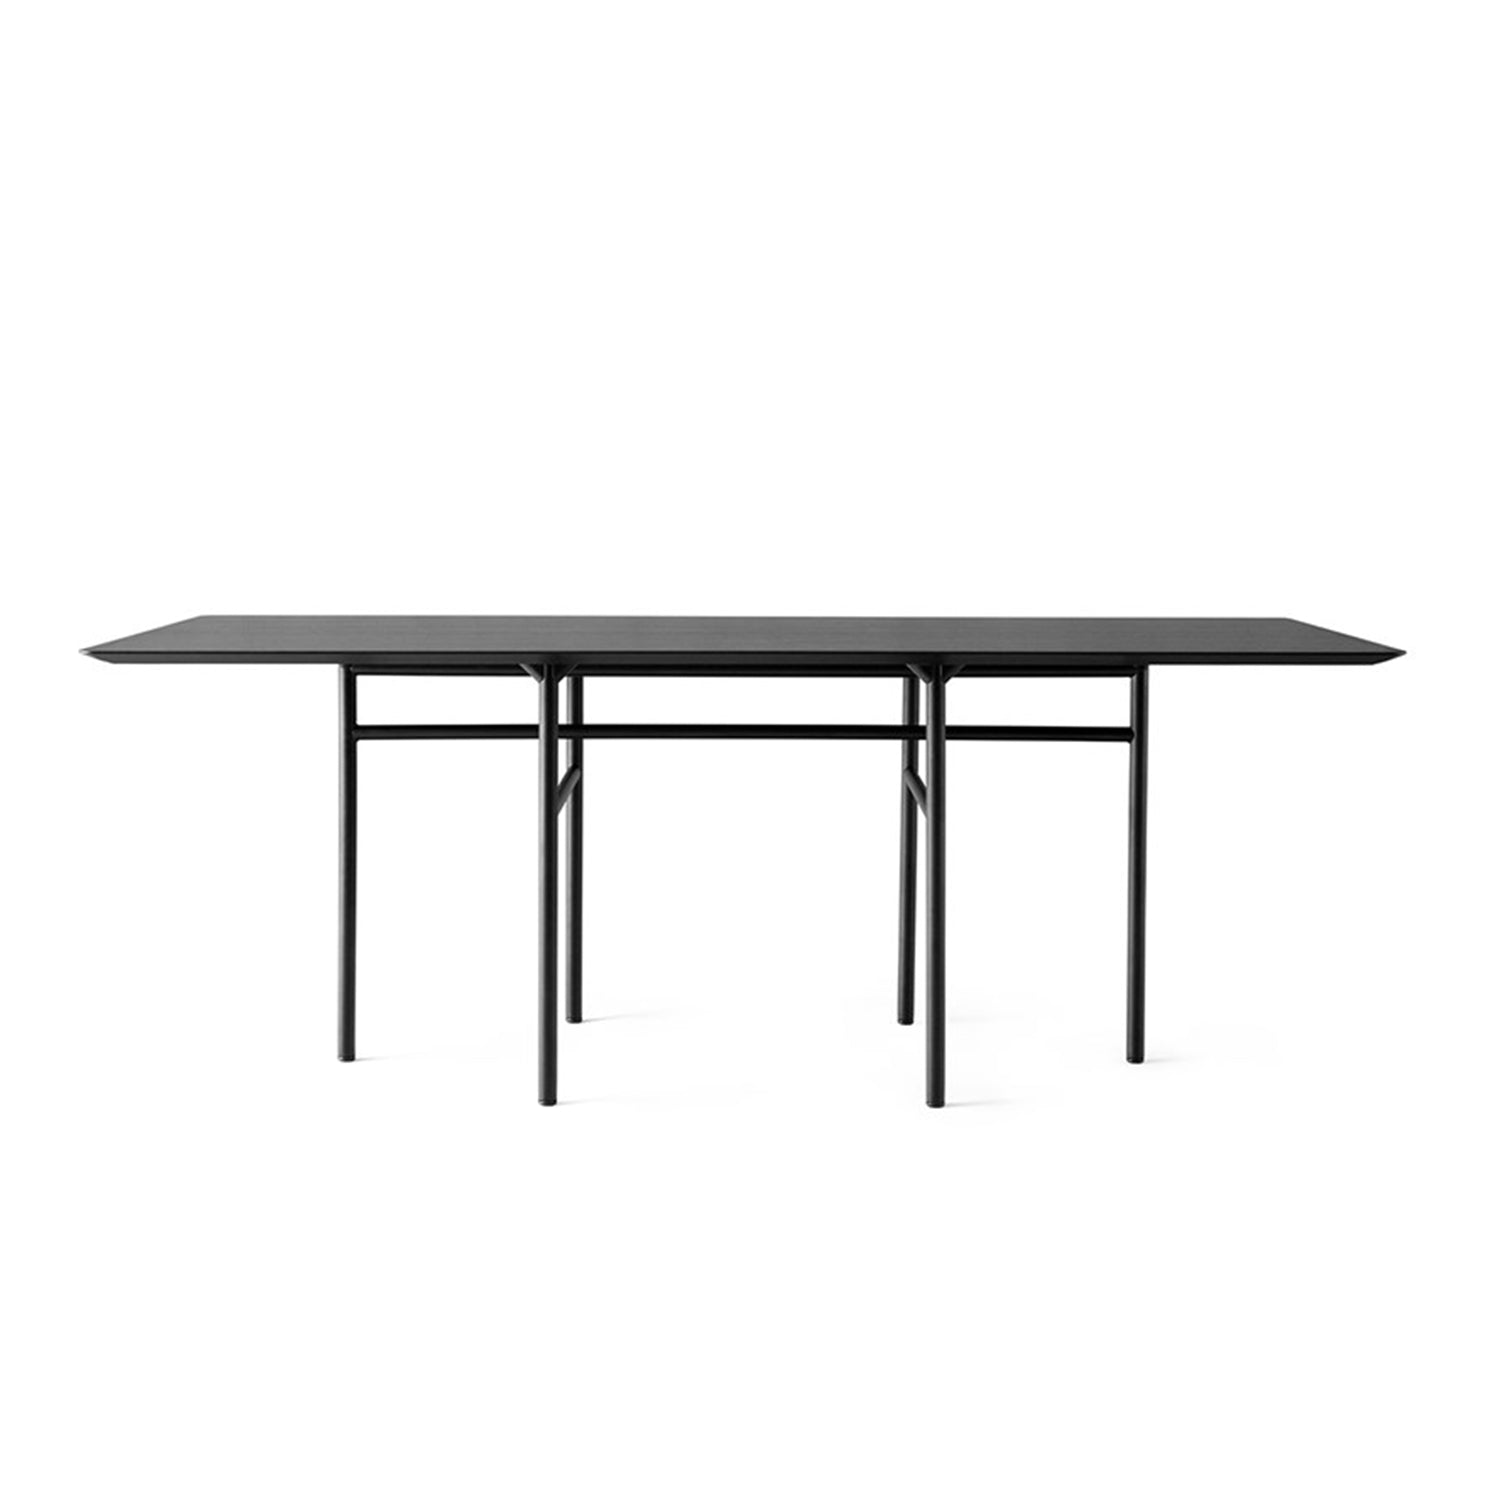 Snaregade Table - The Design Choice